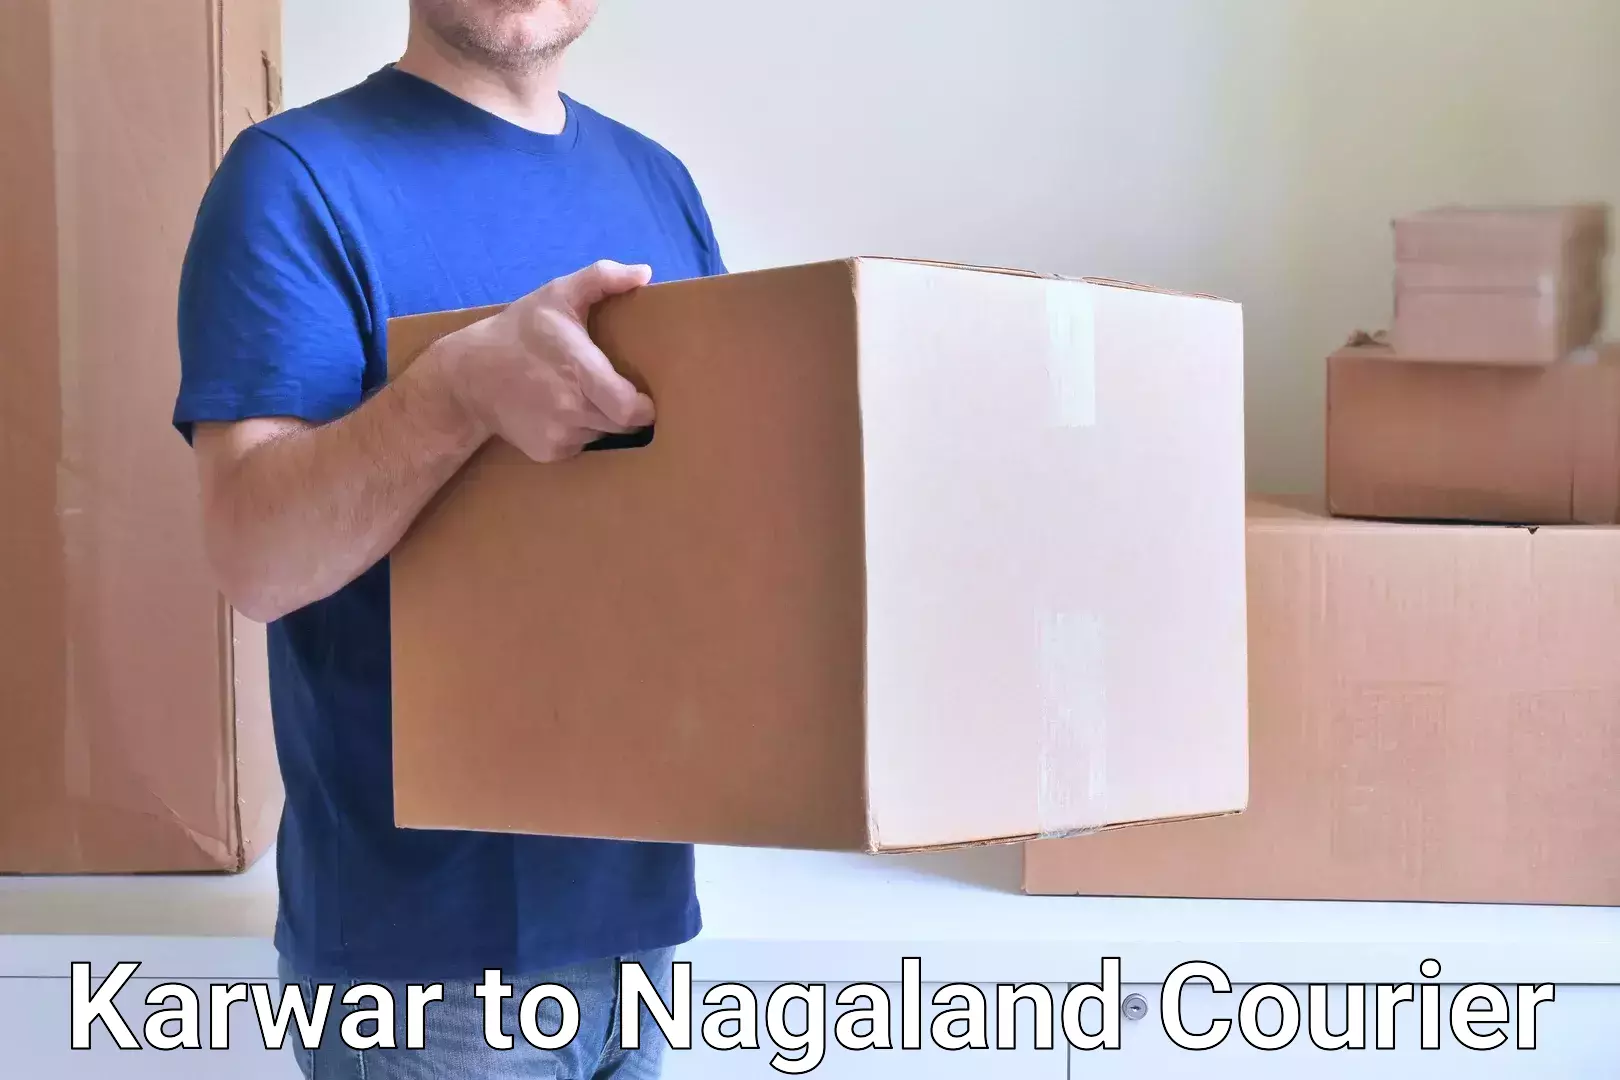 Seamless shipping experience Karwar to Nagaland